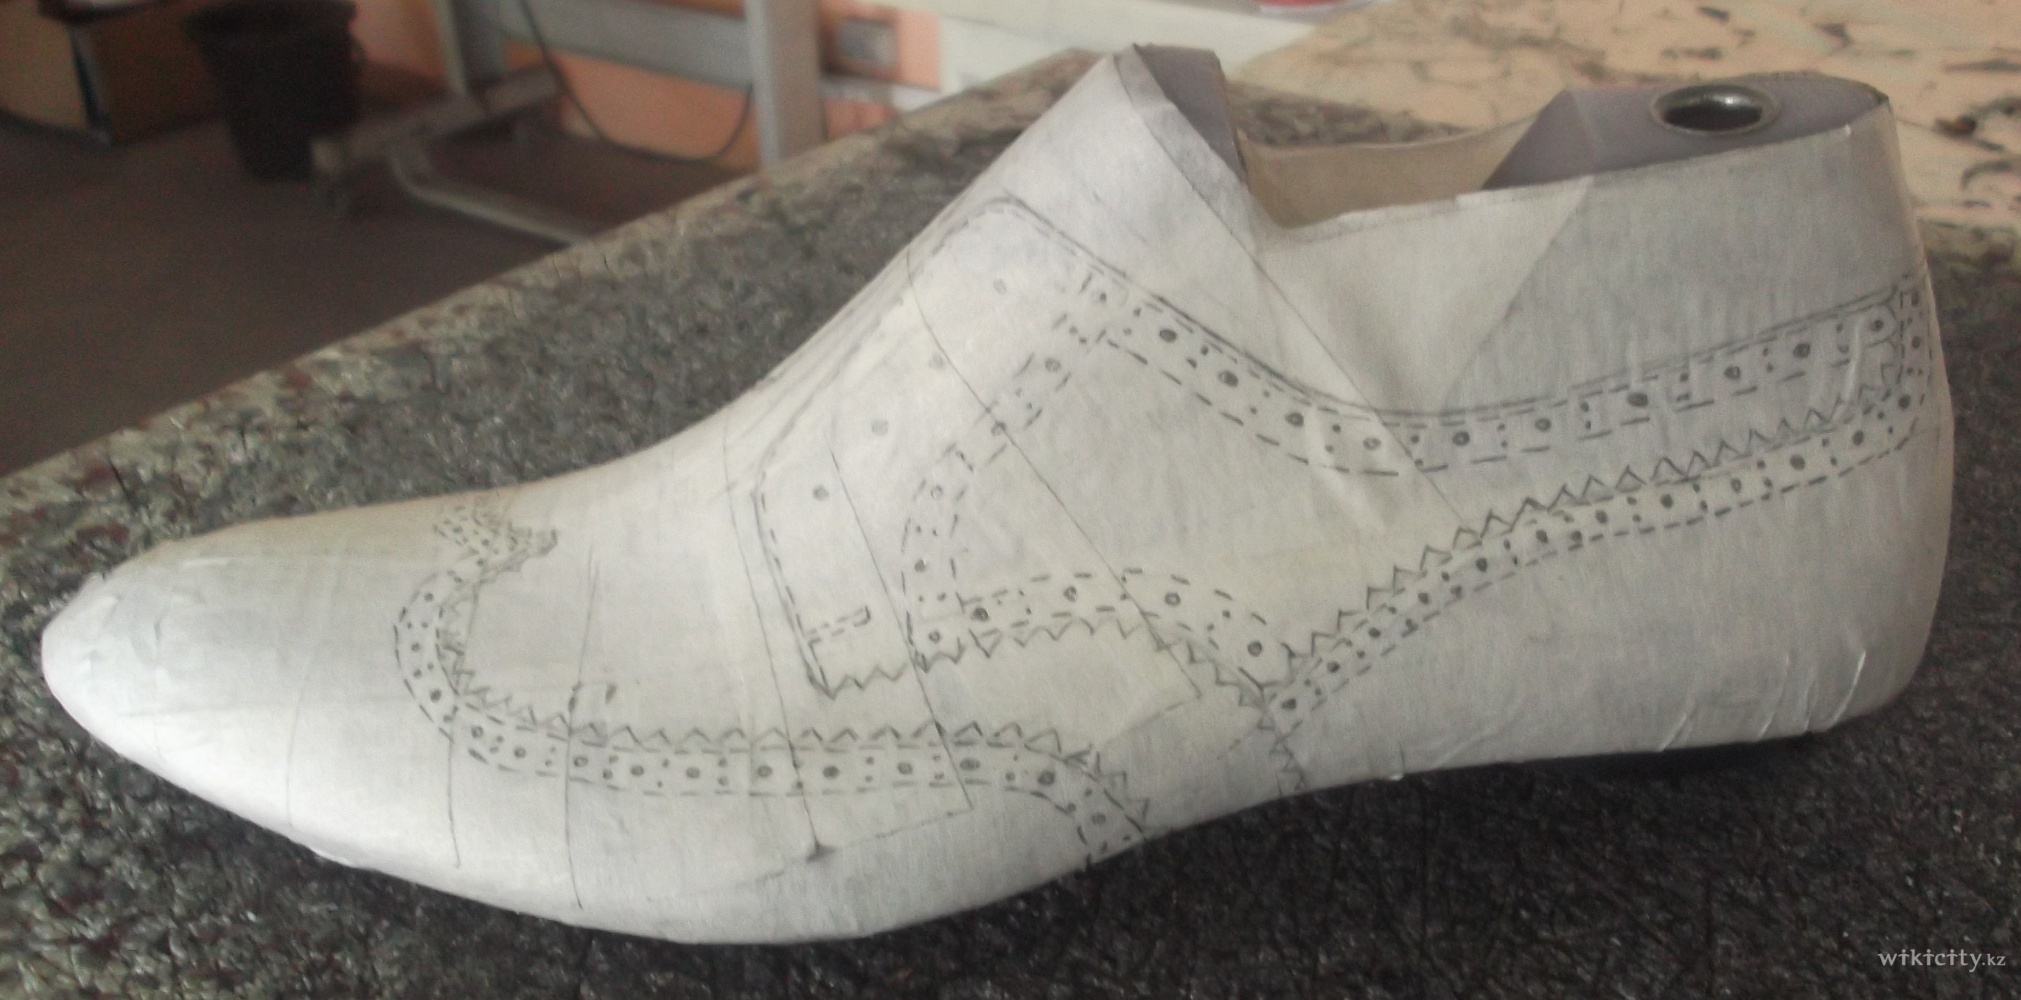 Фото Art florence - Алматы. Эскиз  мужских  туфель  "Брогги"  на обувной   колодке.